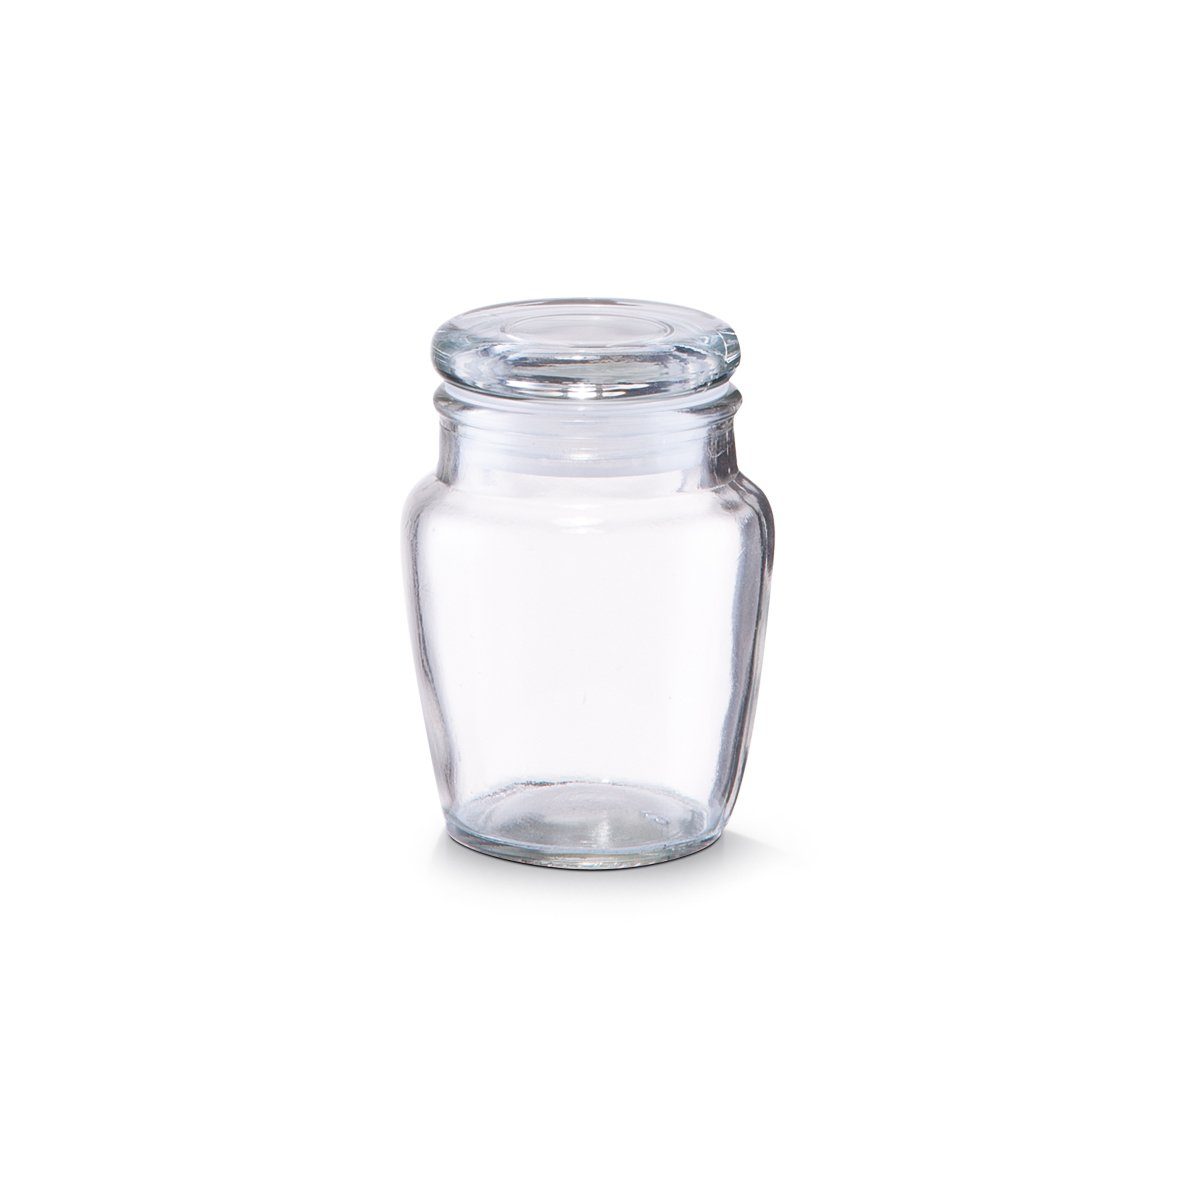 Zeller Present Gewürzbehälter »Gewürzglas«, Glas, Glas, 150 ml, Ø7 x 9,5 cm  online kaufen | OTTO